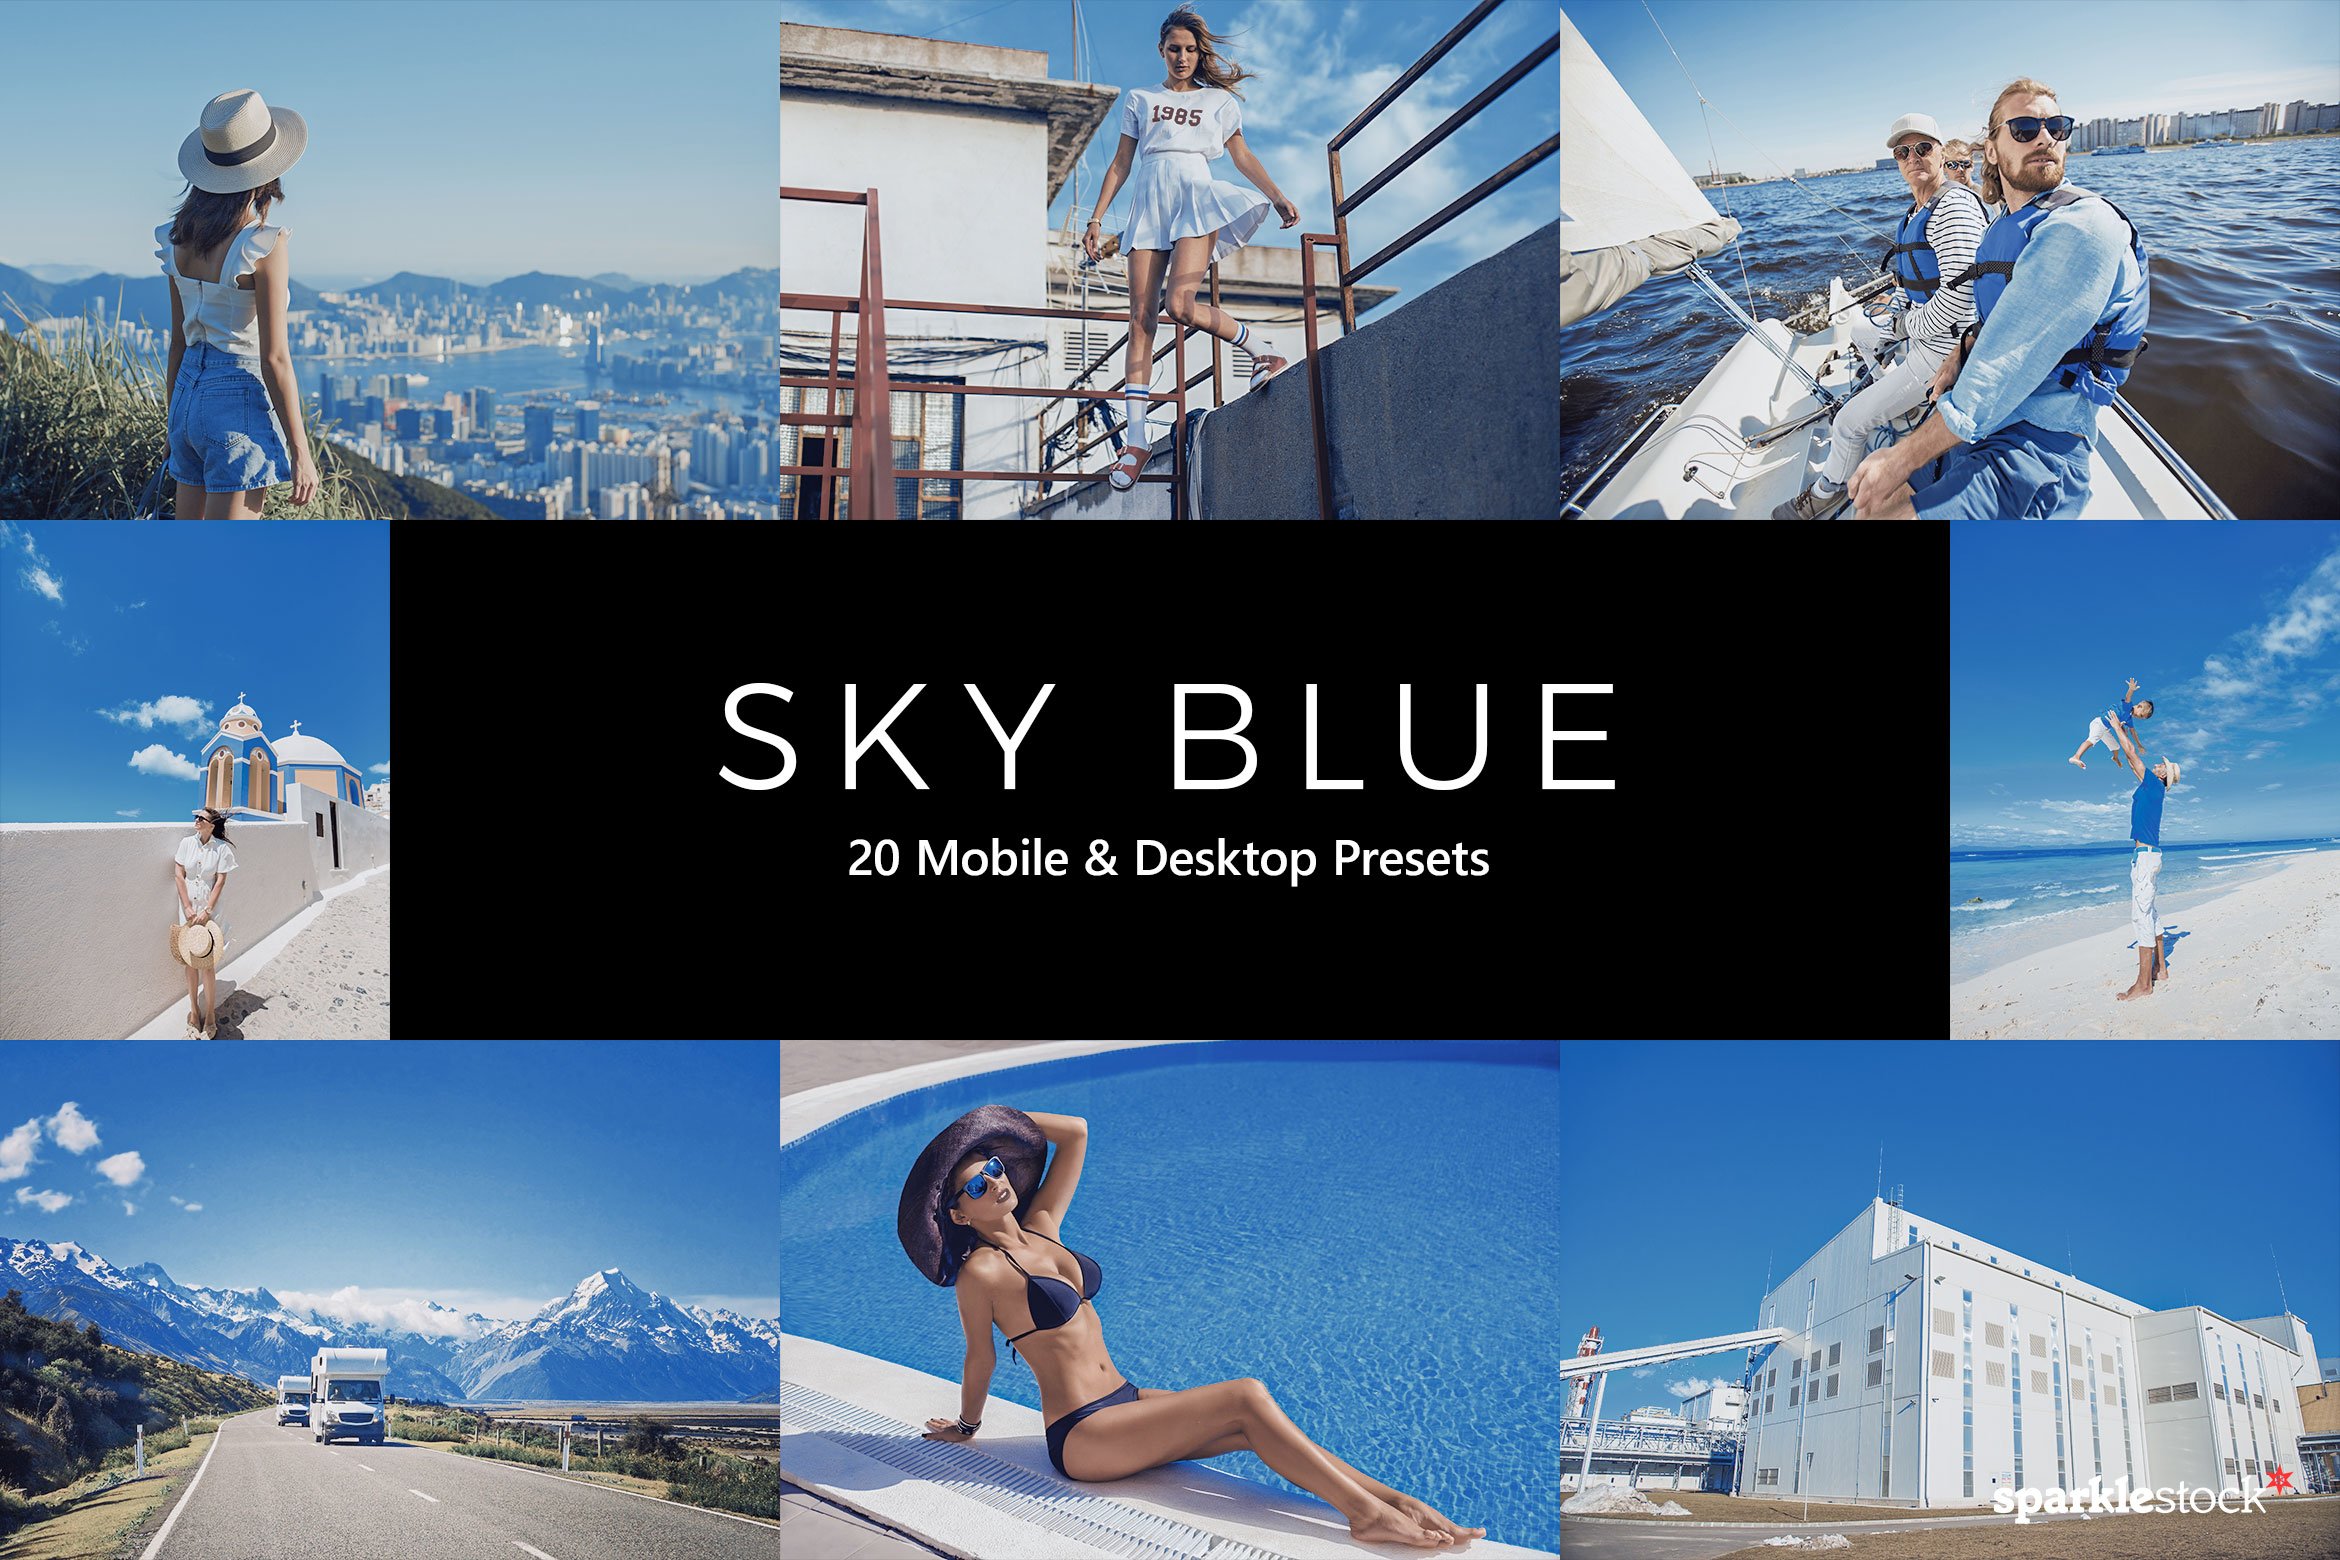 20 Sky Blue Lightroom Presets & LUTscover image.